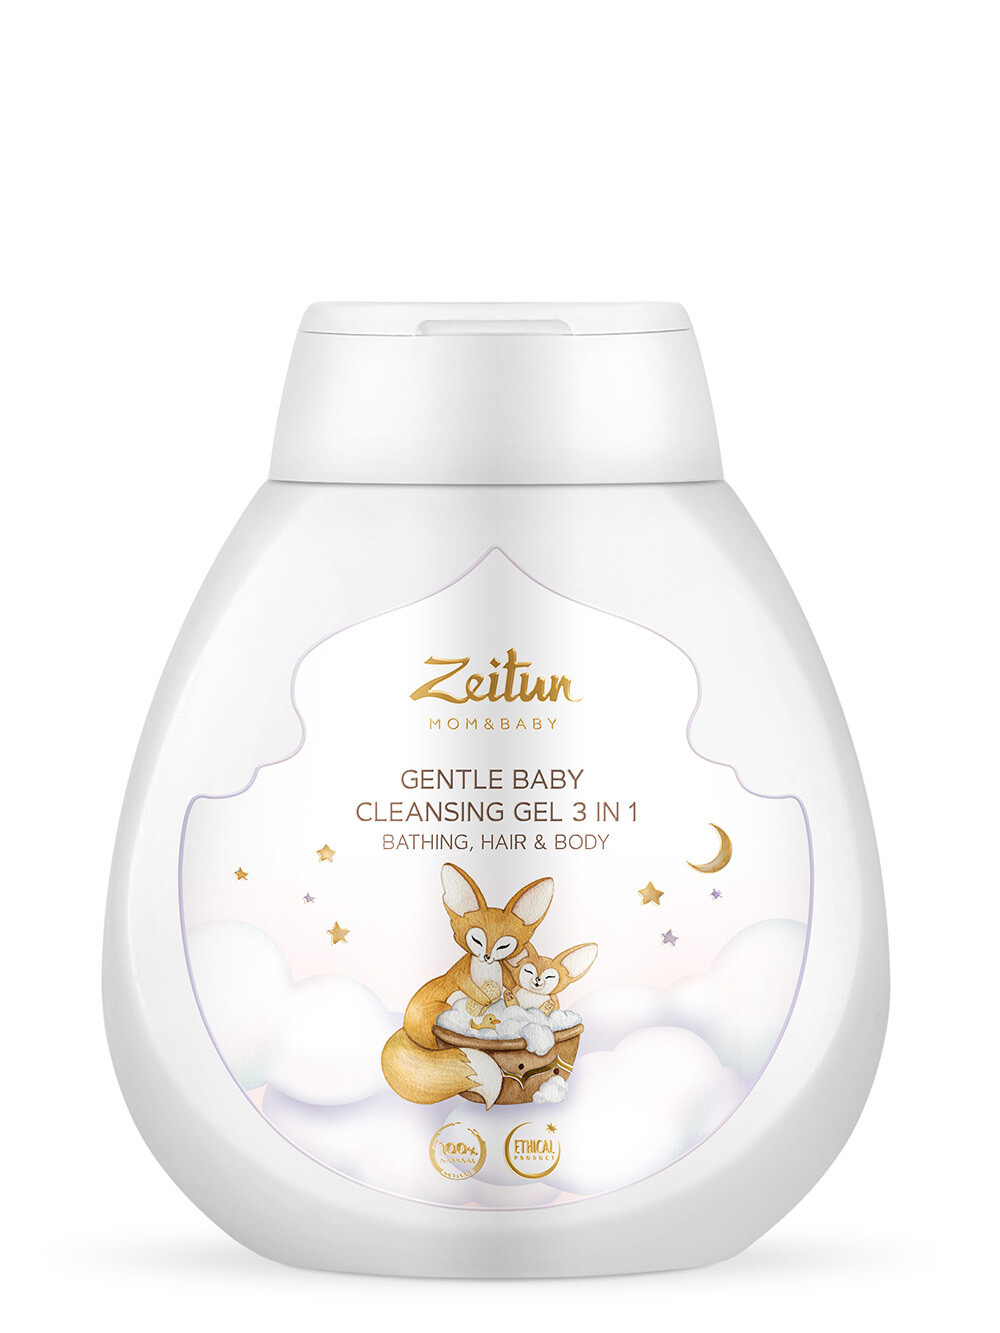 Zeitun Gentle Baby Cleansing Gel Нежный детский гель 3 в 1: для купания, очищений волос и тела